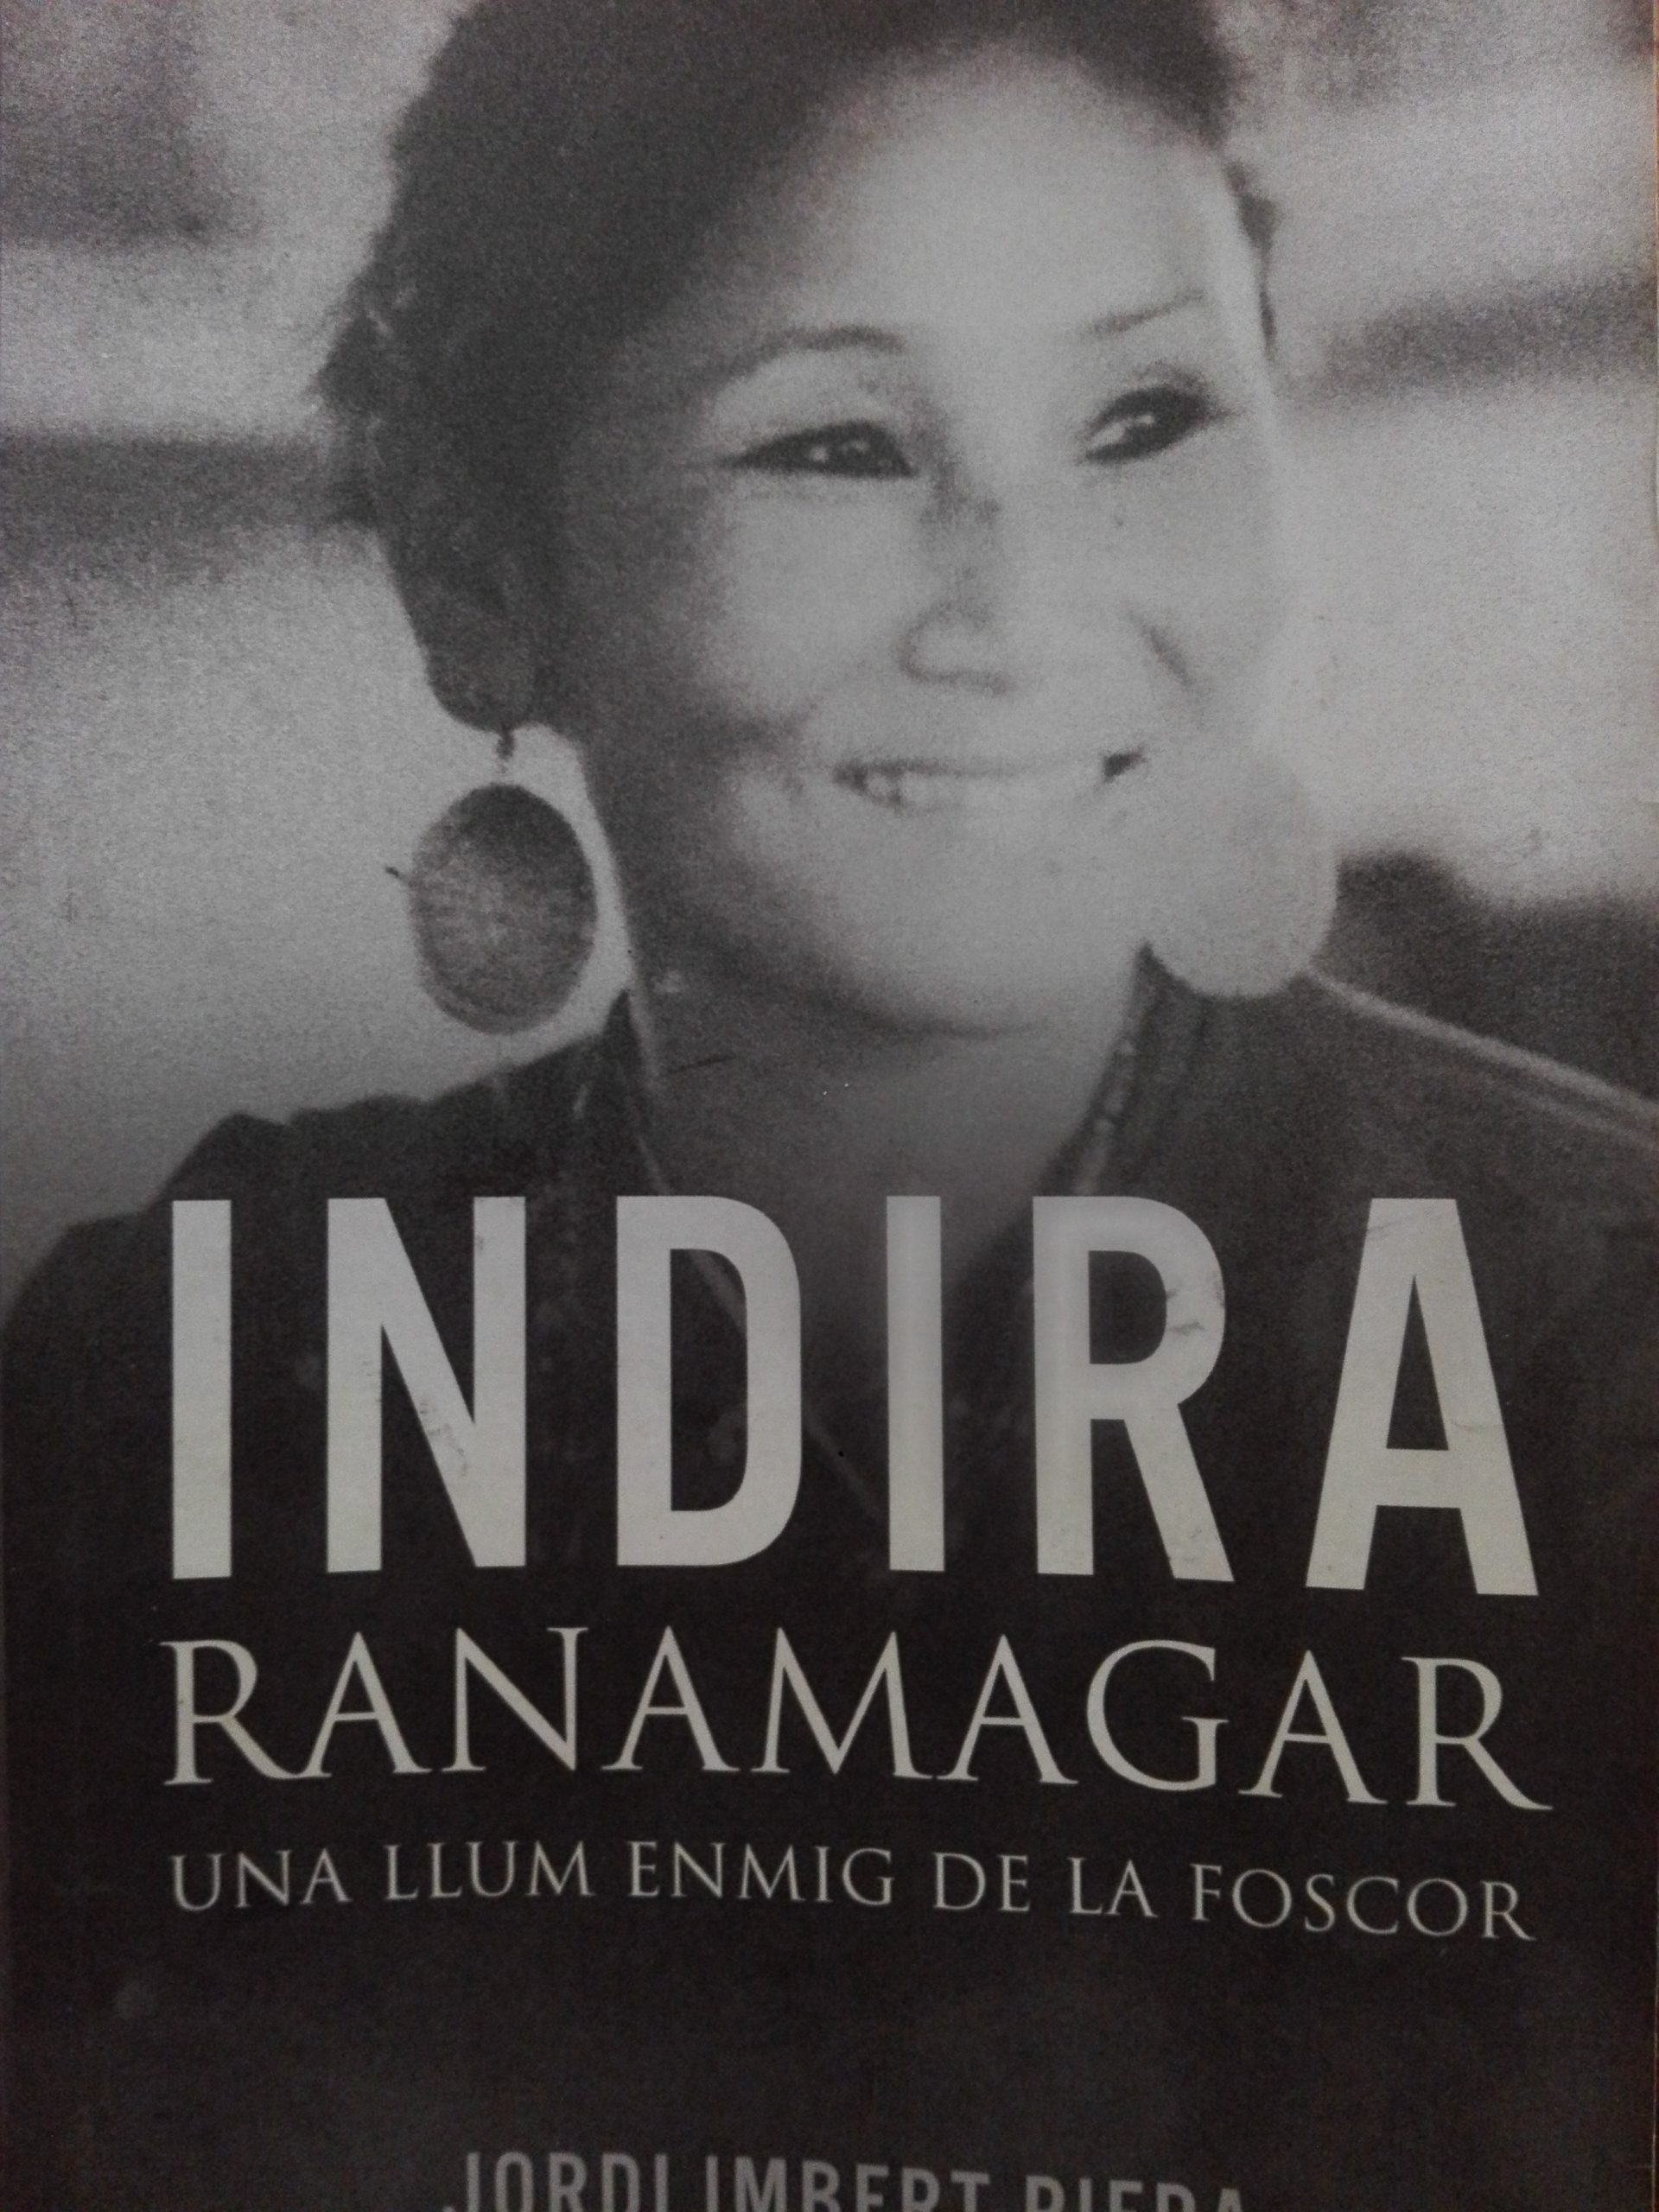 indira-ranamagar-biography-book